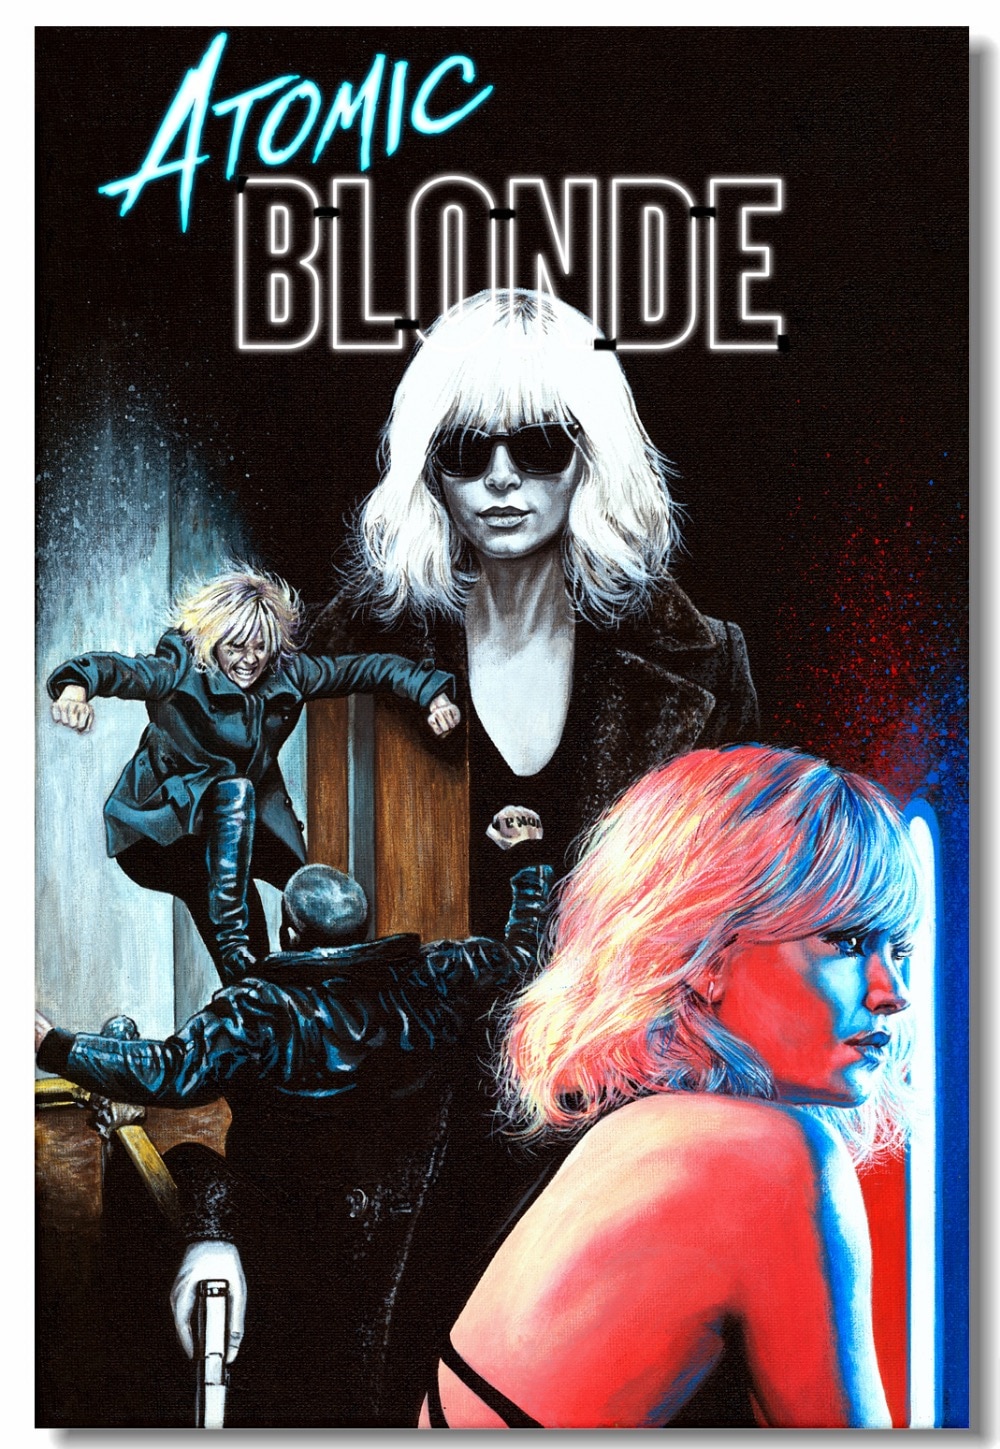 Atomic Blonde (2017) 480p BluRay Hindi Dual Audio Movie ESubs [400MB]